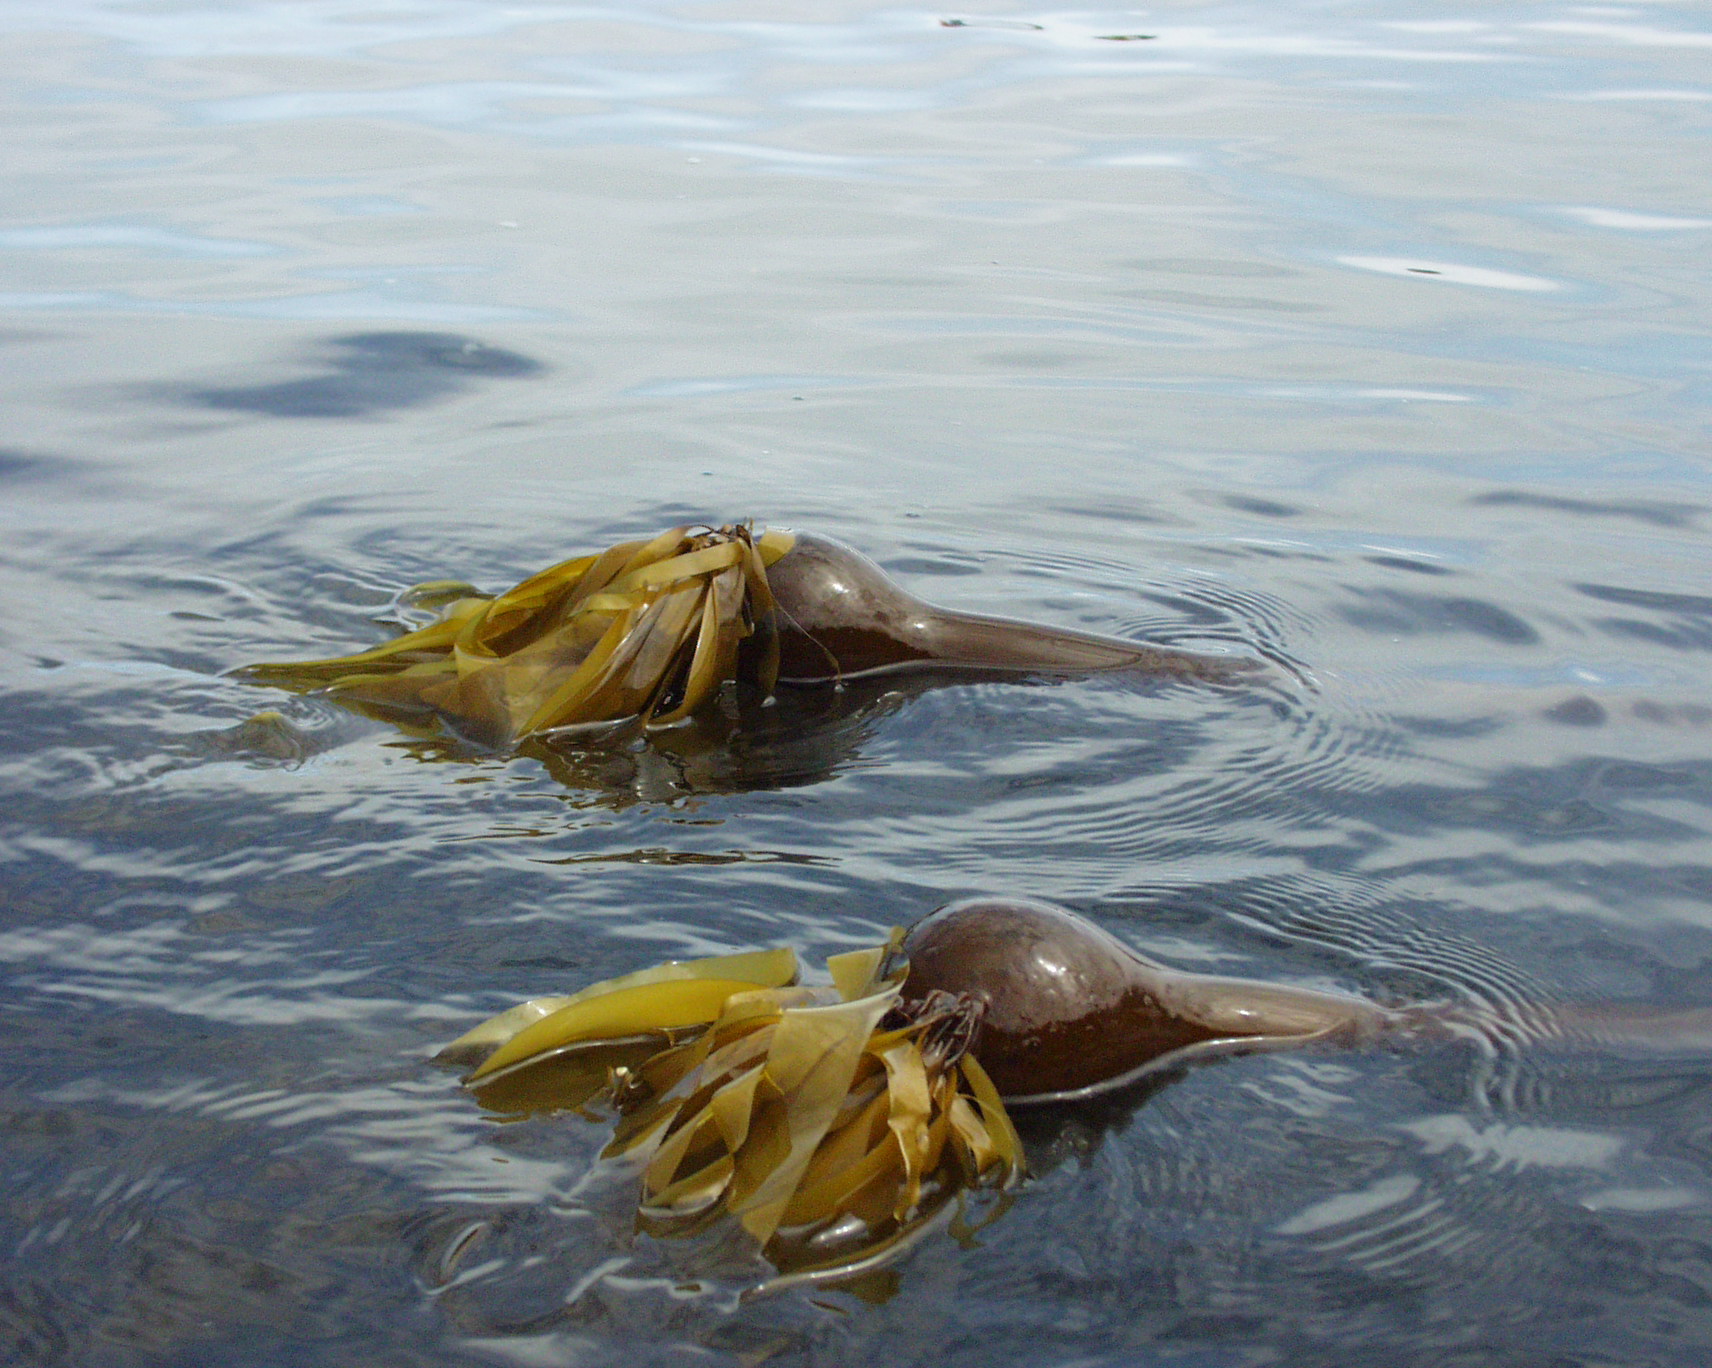 sea kelp pierdere în greutate holland și barrett)